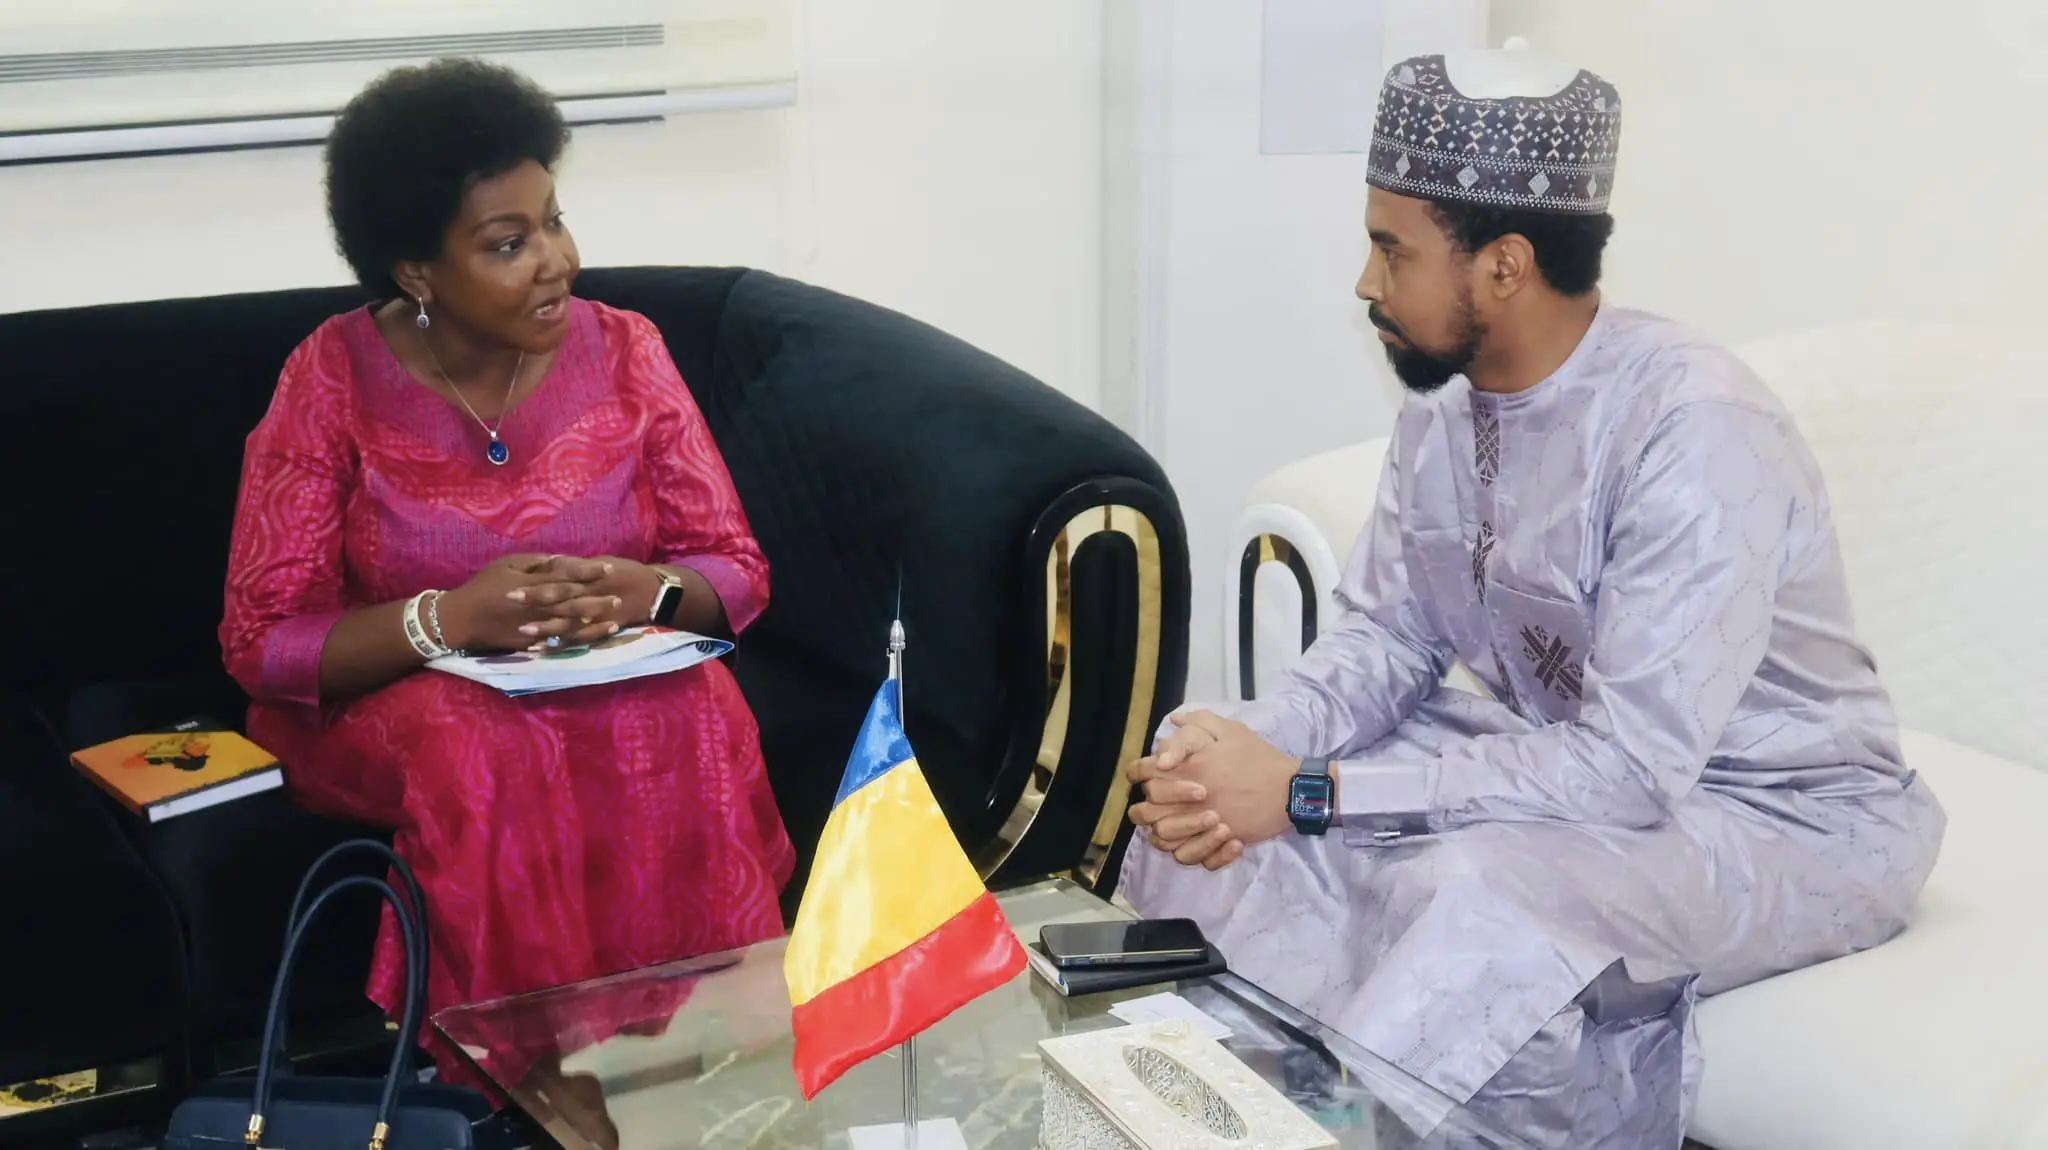 Tchad : Le gouvernement renforce sa coopération avec le système des Nations Unies